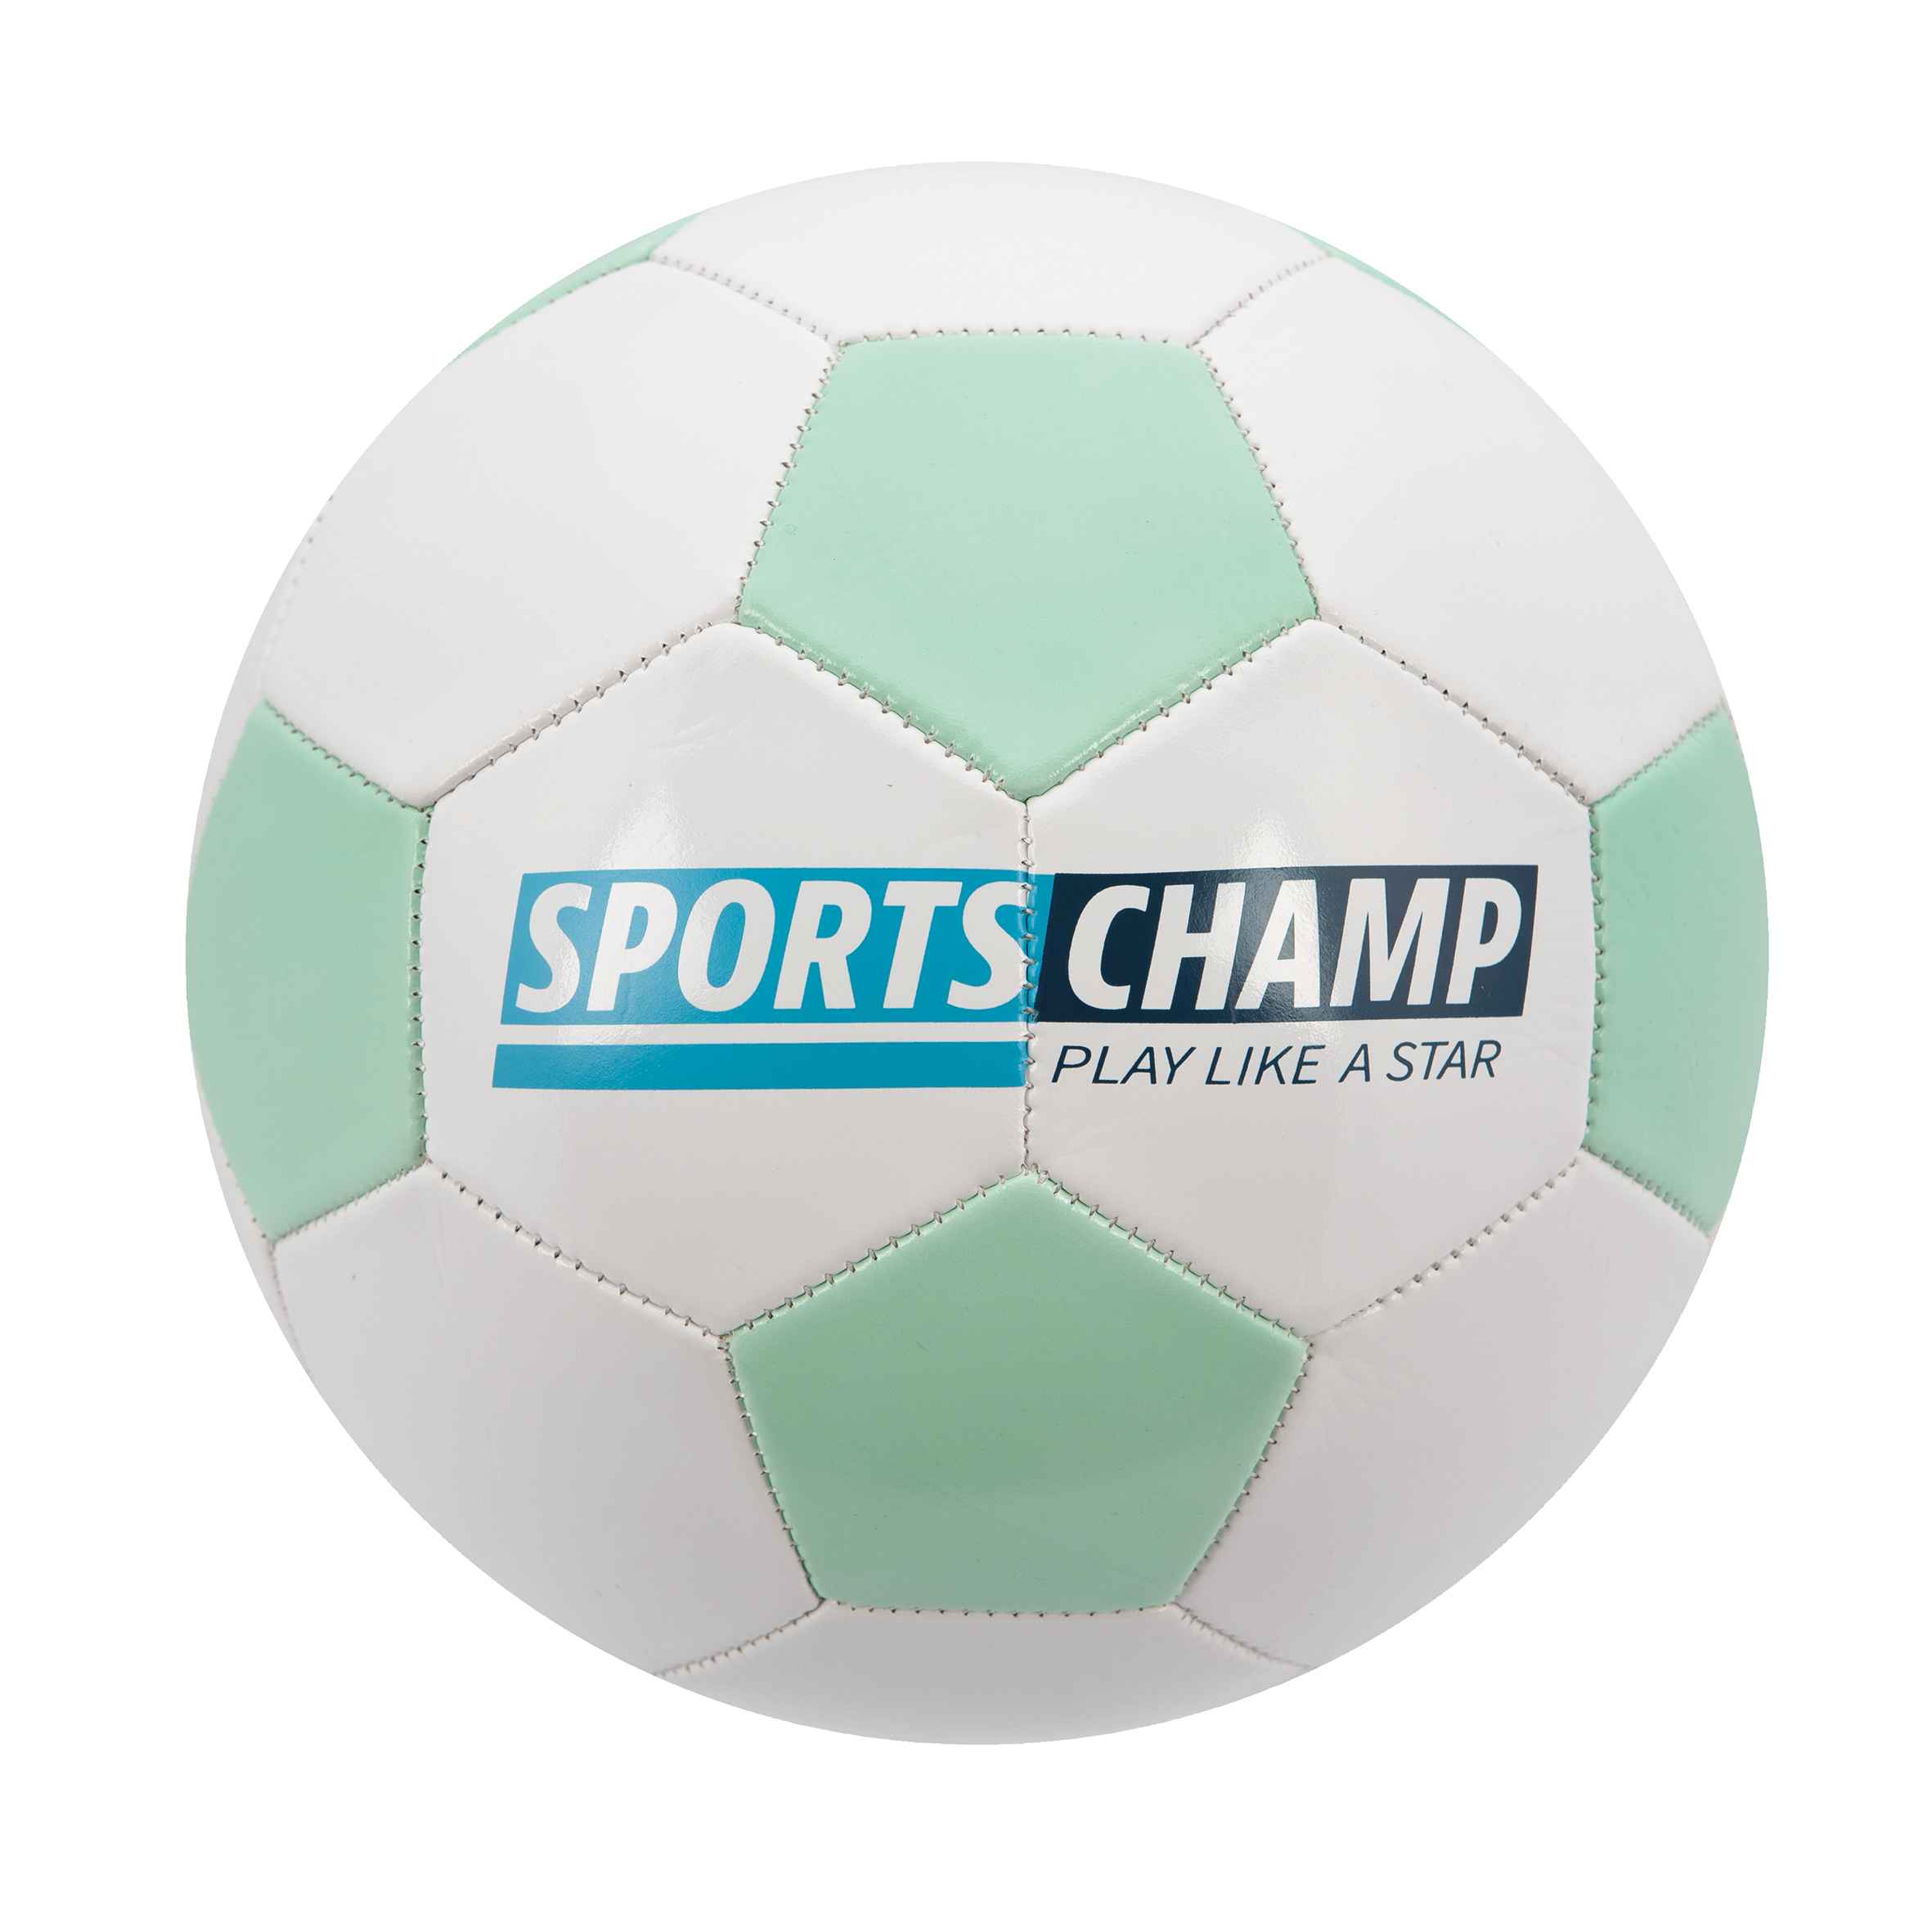 John Μπάλα Ποδοσφαίρου 220mm Sports Champ, 3 Χρώματα 52985 - John Hellas